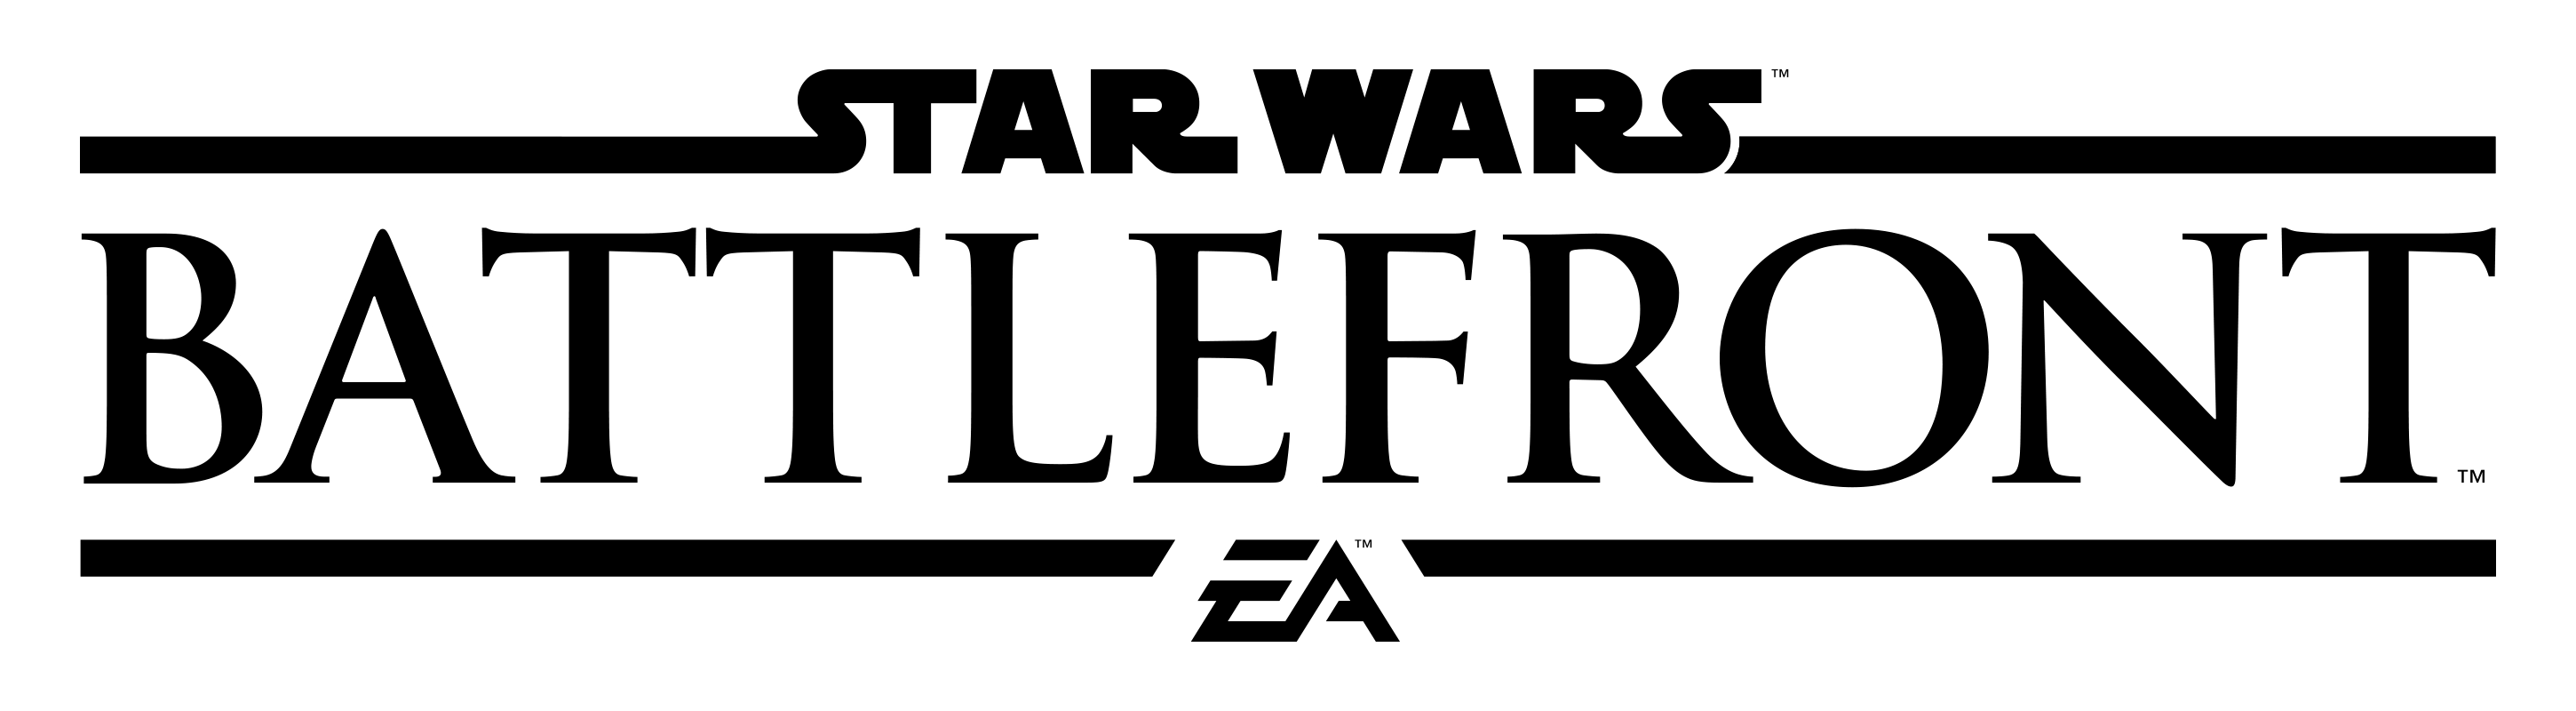 Star Wars Battlefront Logo Transparent Image PNG Image